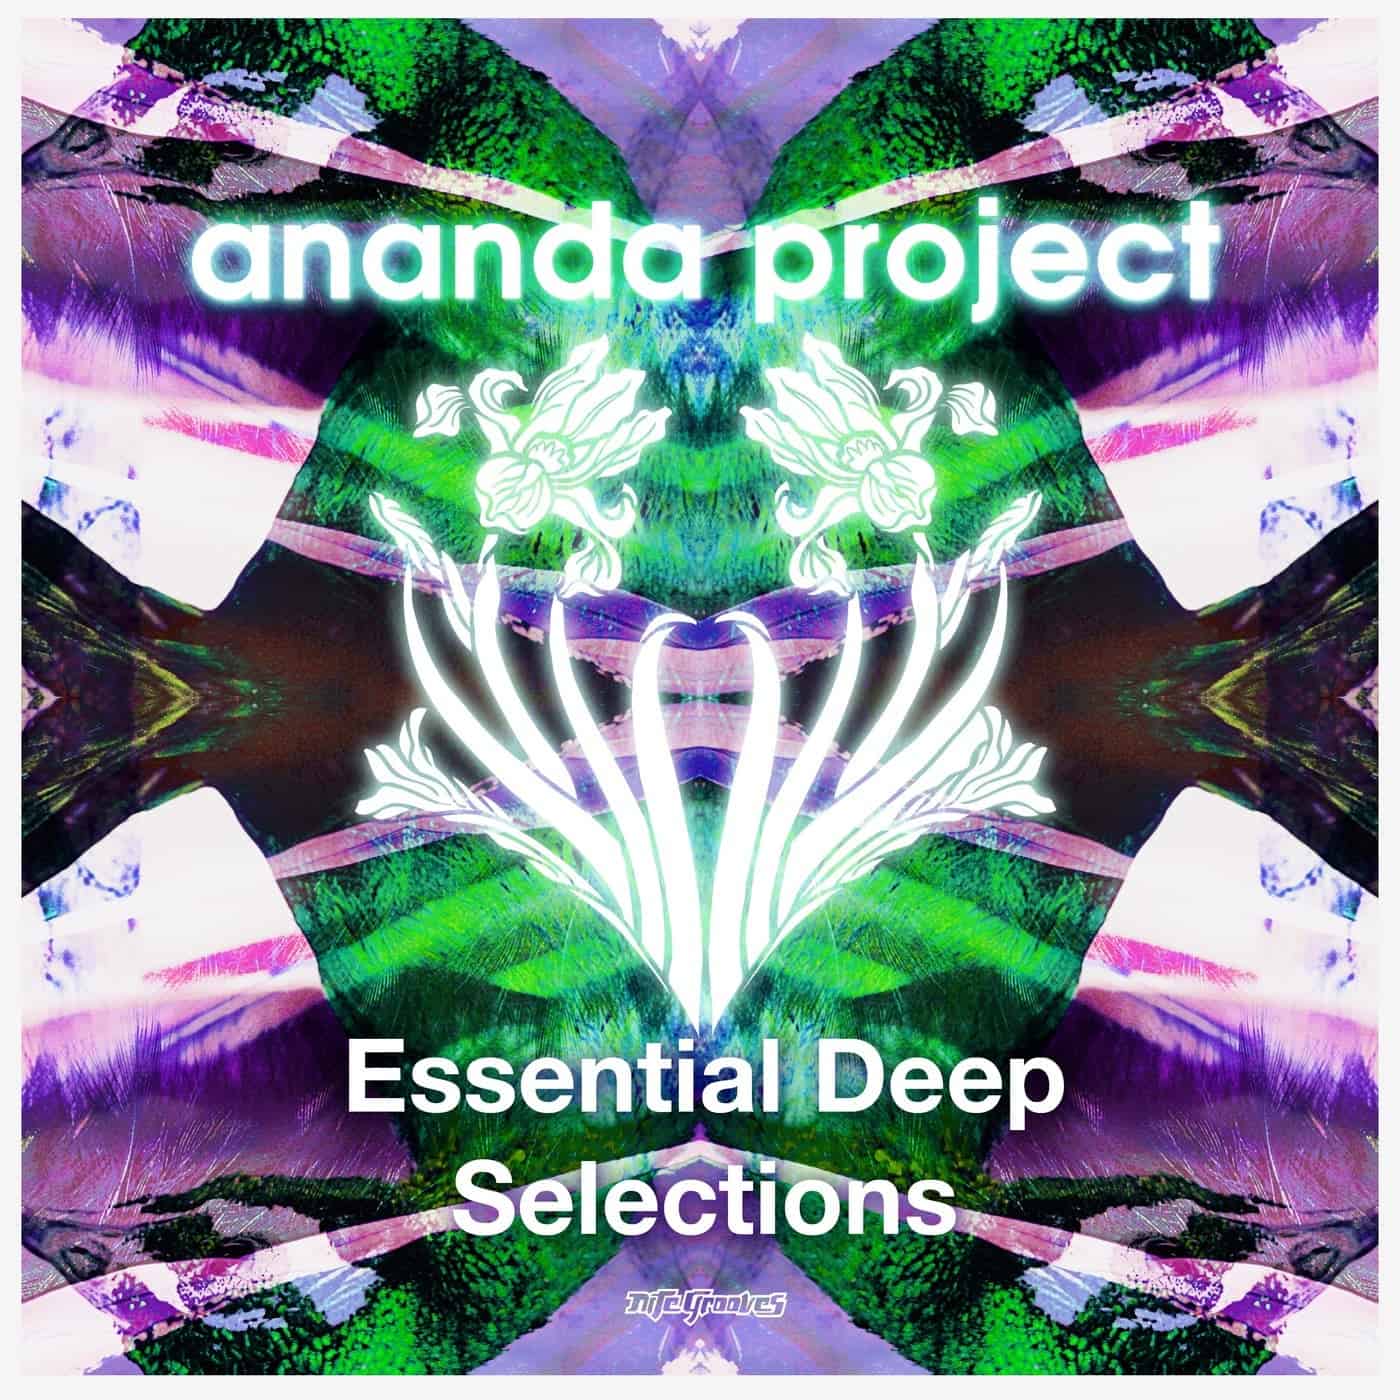 Download Ananda Project, Gaelle Adisson, Heather Johnson, Mia Tuttavilla, Terrance Downs, Kai Martin, AK - Essential Deep Selections on Electrobuzz